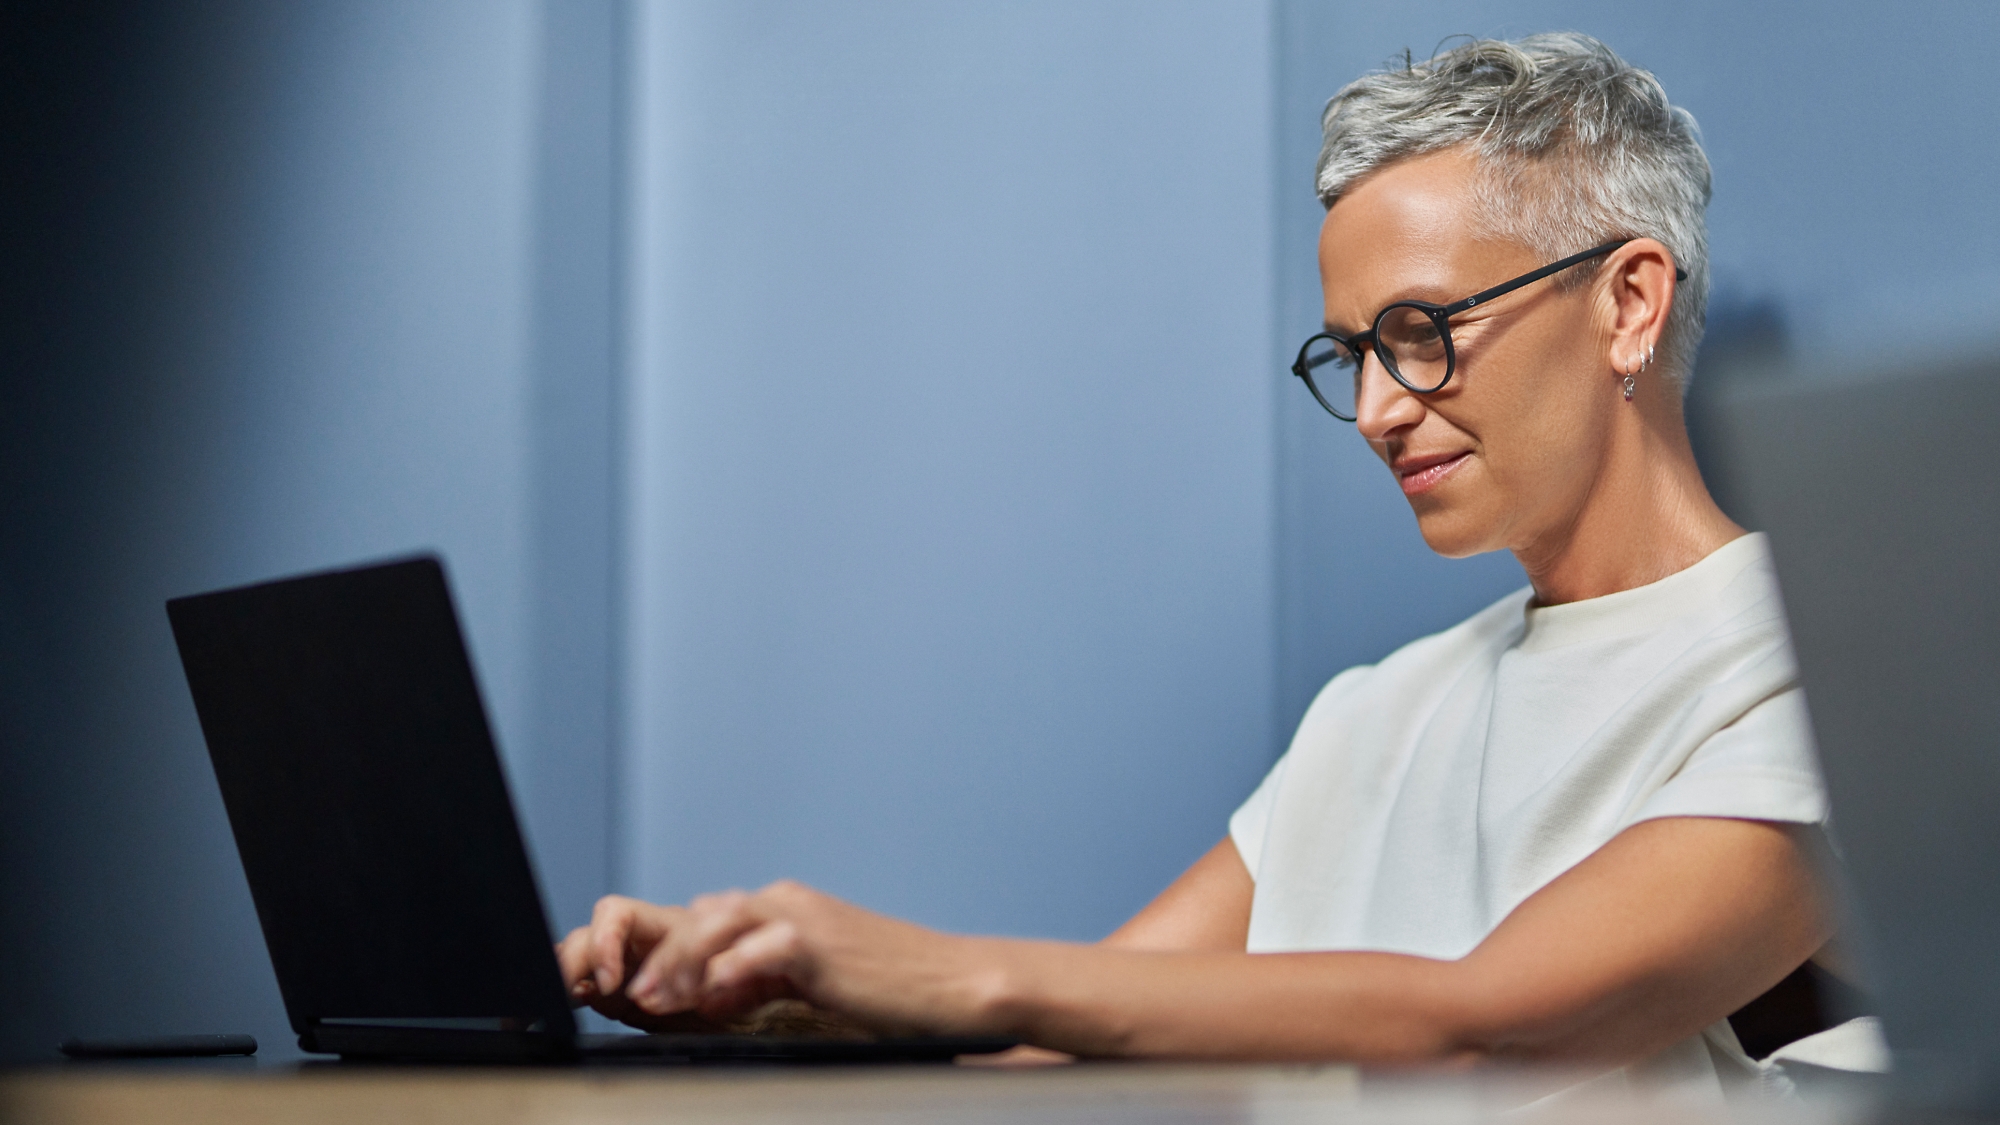 Donna matura con capelli grigi corti che sorride e lavora su un portatile in un ufficio moderno.